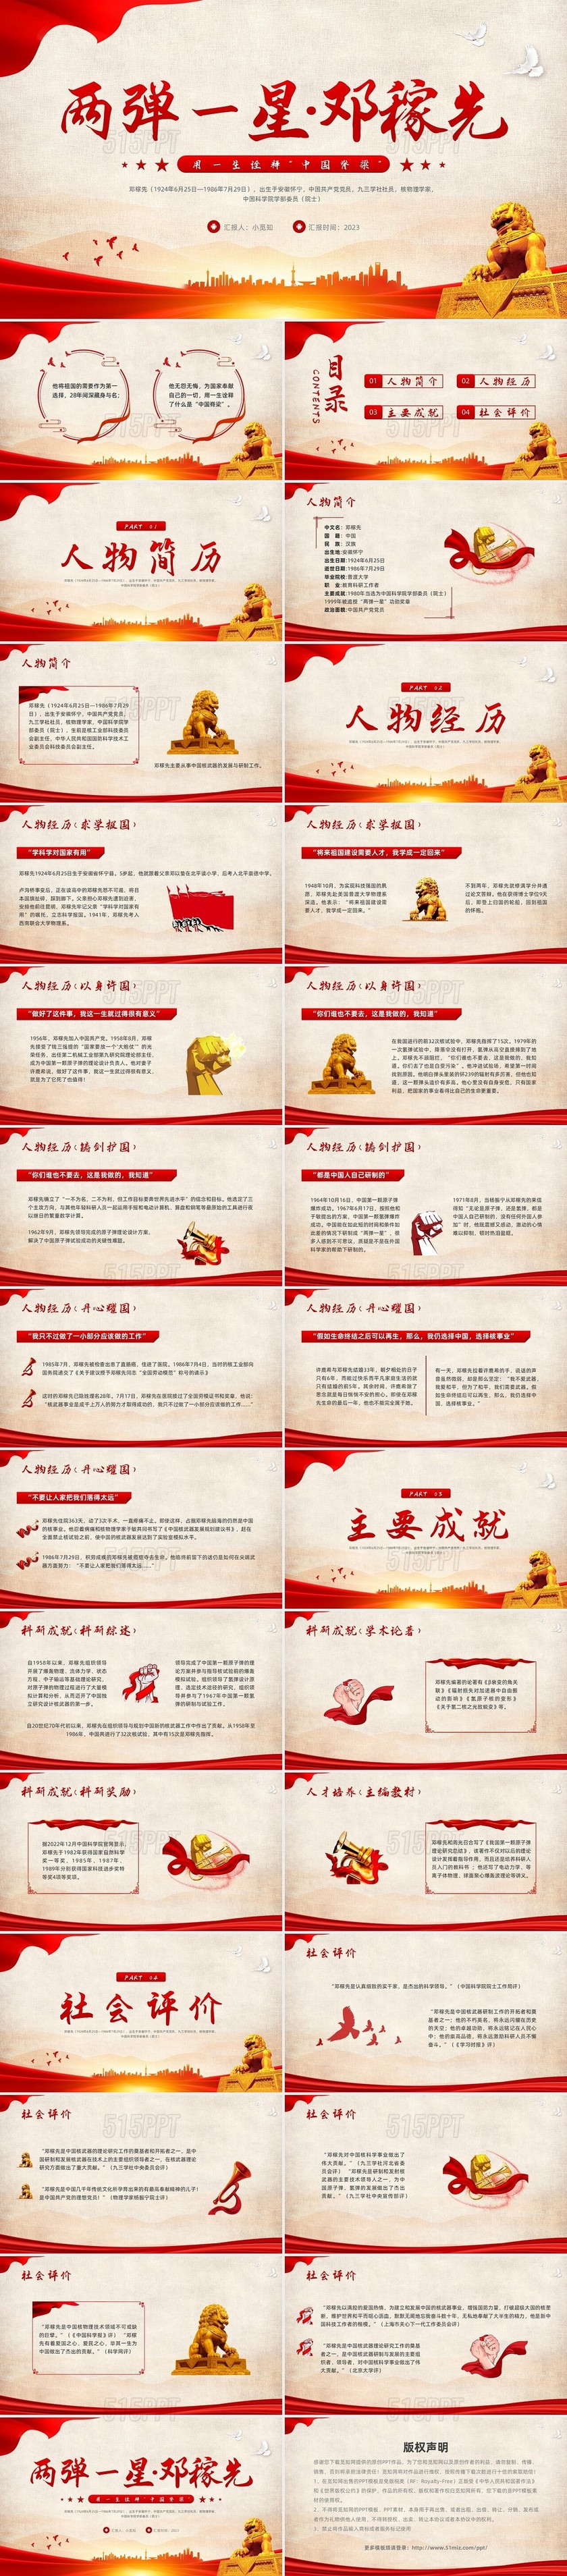 红色简约用一生诠释中国脊梁两弹一星邓稼先PPT模板宣传人物介绍